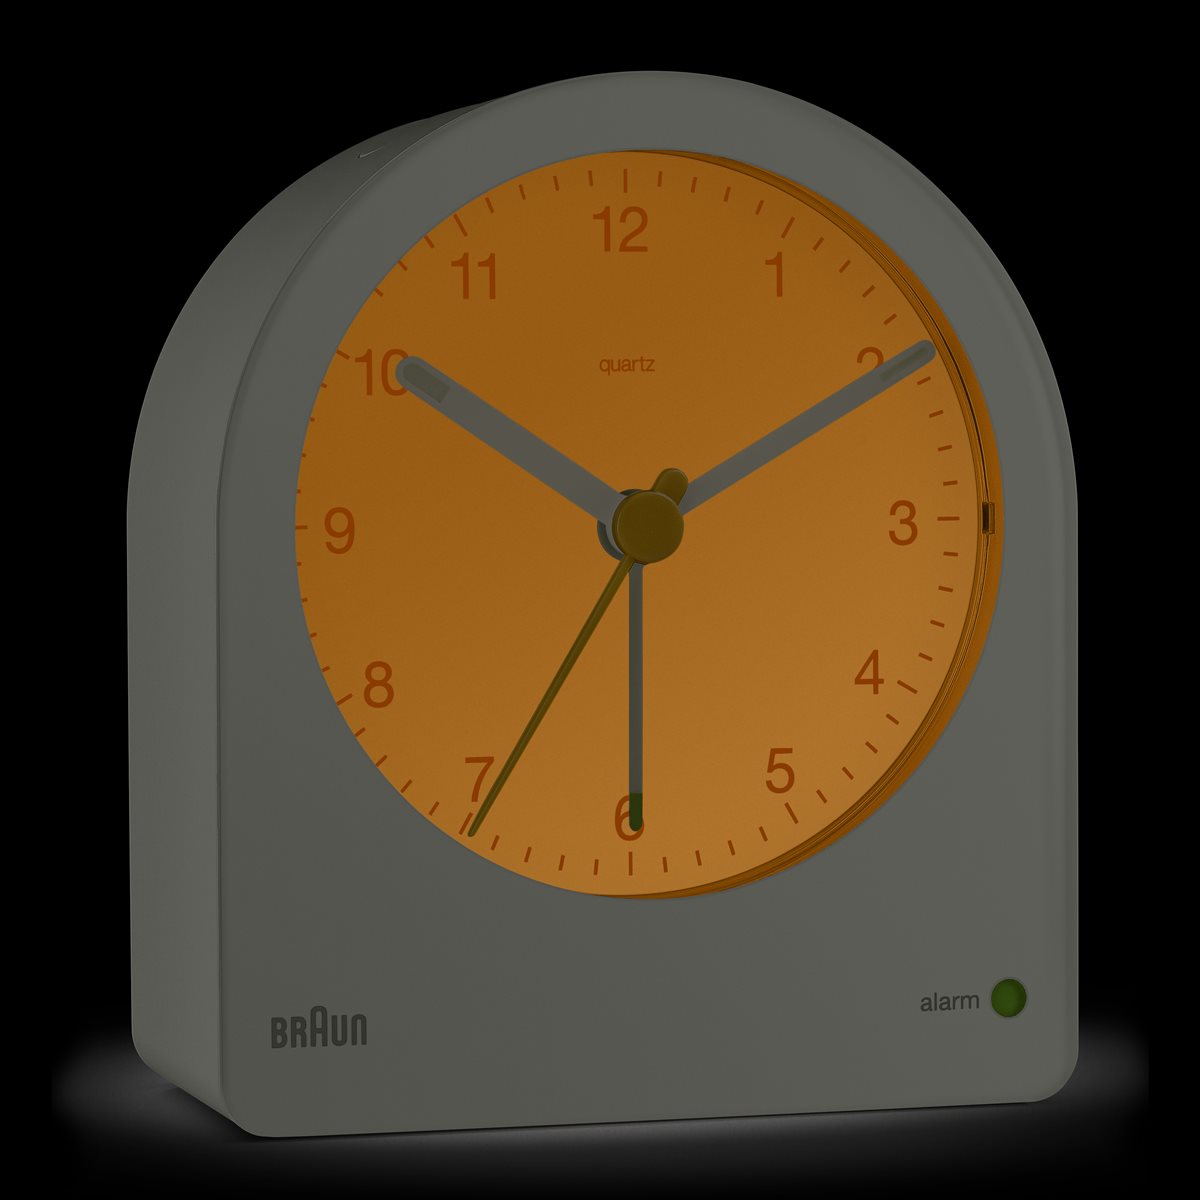 BRAUN ブラウン アラームクロック BC22G アナログ 目覚まし時計 置時計 Alarm Clock 78mm グレー